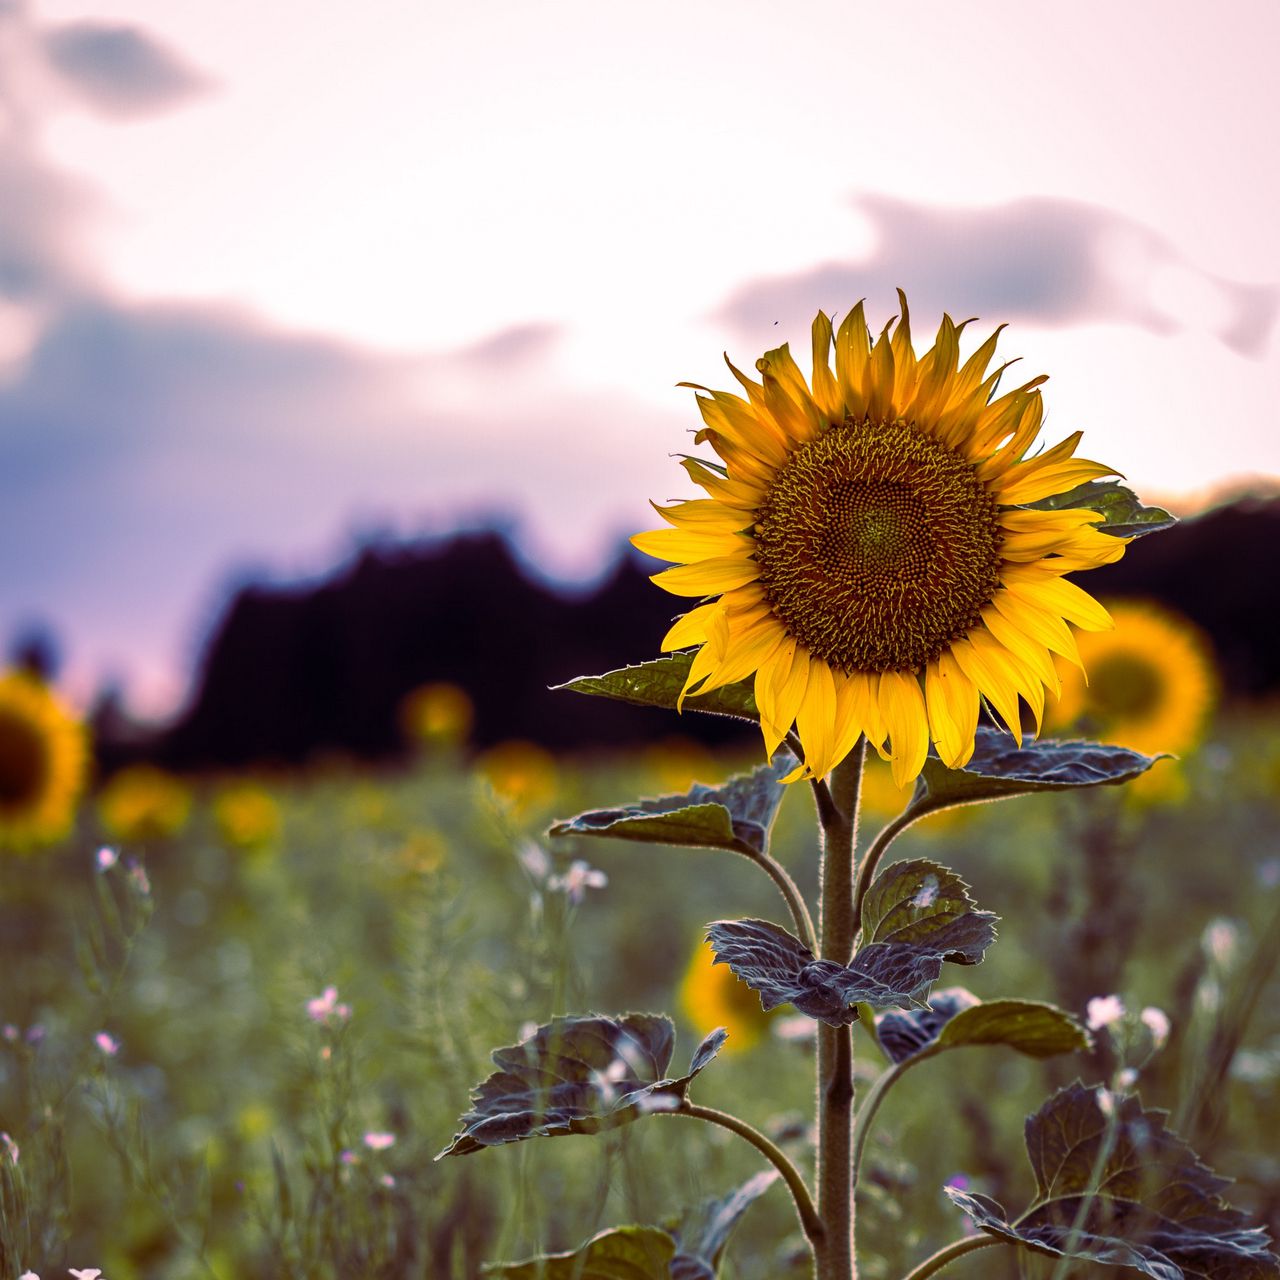 Download wallpaper 1280x1280 sunflower, bloom, field, grass ipad, ipad ipad mini for parallax HD background